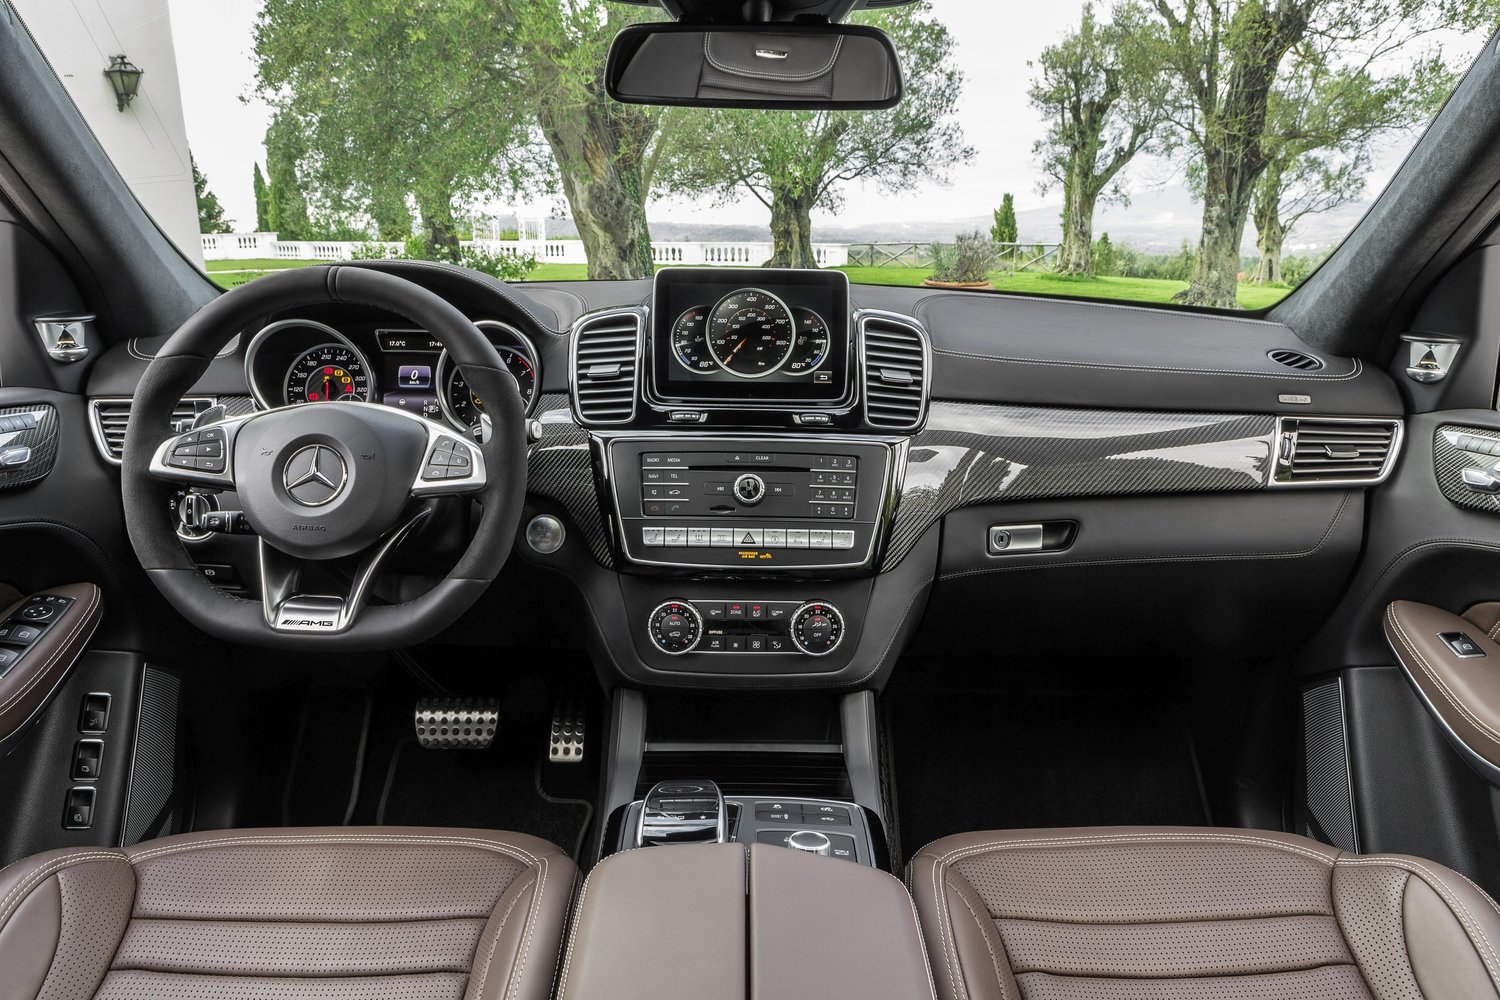 внедорожник Mercedes-Benz GLS-klasse AMG 2015 - 2016г выпуска модификация AMG GLS 63 4MATIC Особая серия 5.5 AT (585 л.с.) 4×4